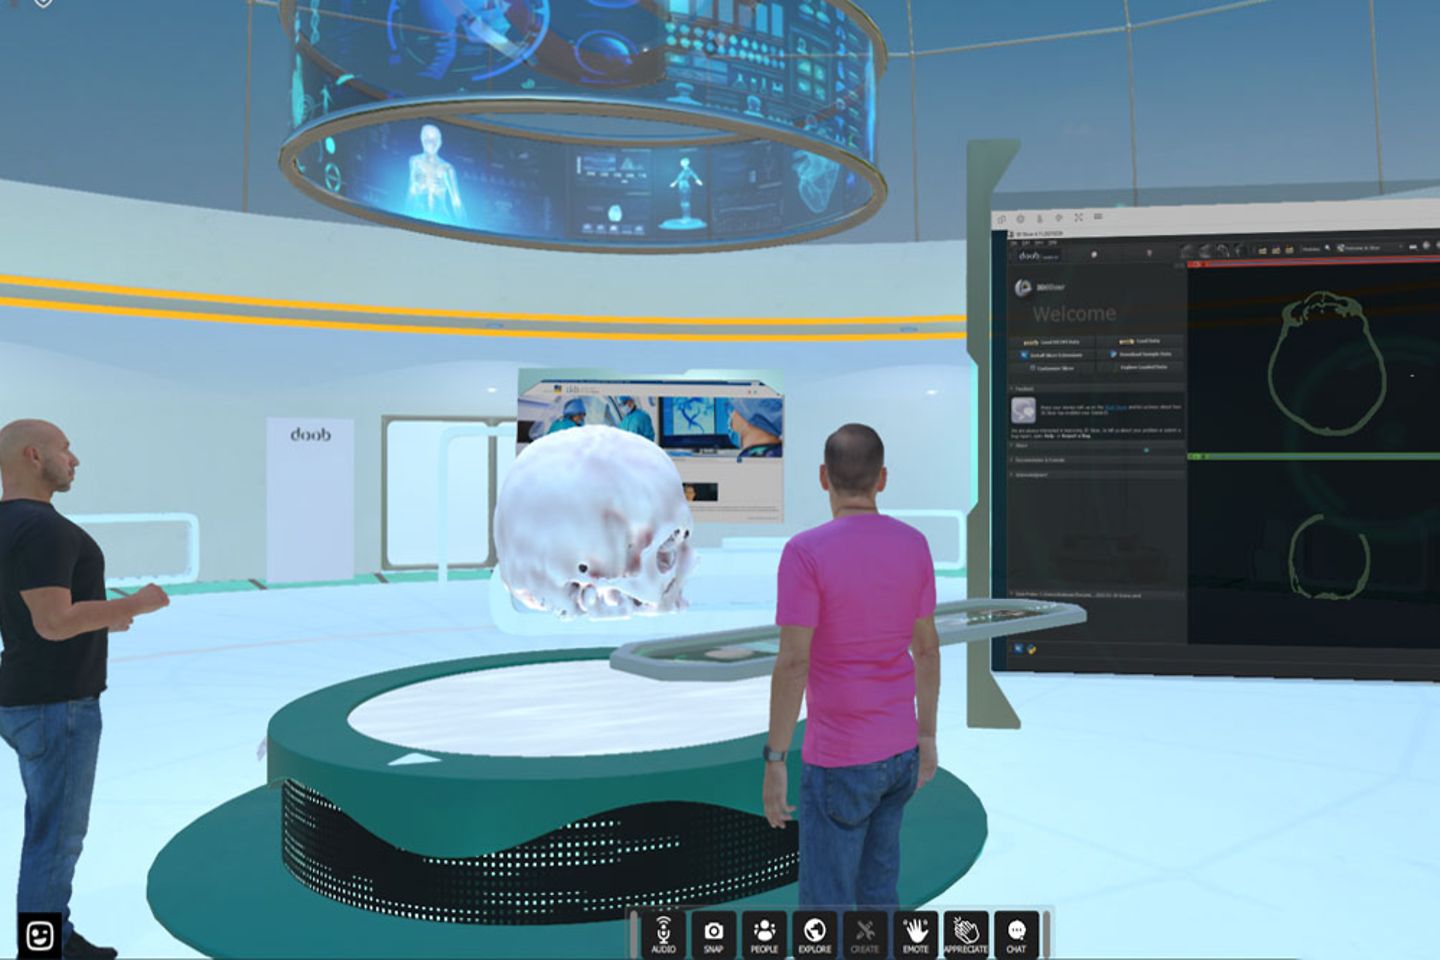 Virtuele weergave van een operatiekamer met een menselijke schedel en twee avatars